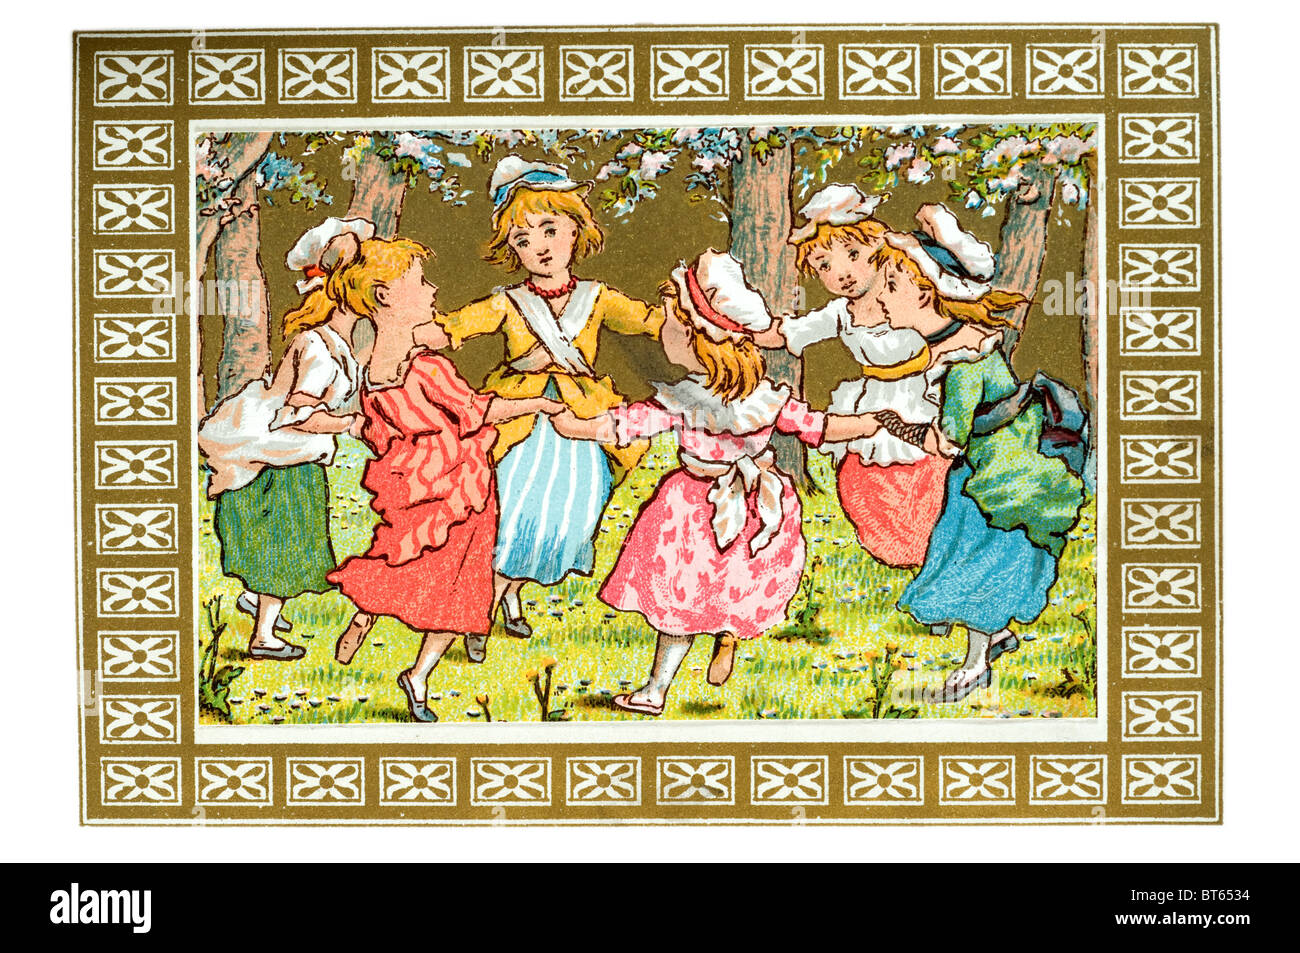 Un anillo de rosas rima musical niñas bailando en un círculo capós capot vestidos jardín cantar cantar la danza para los niños jugar Foto de stock